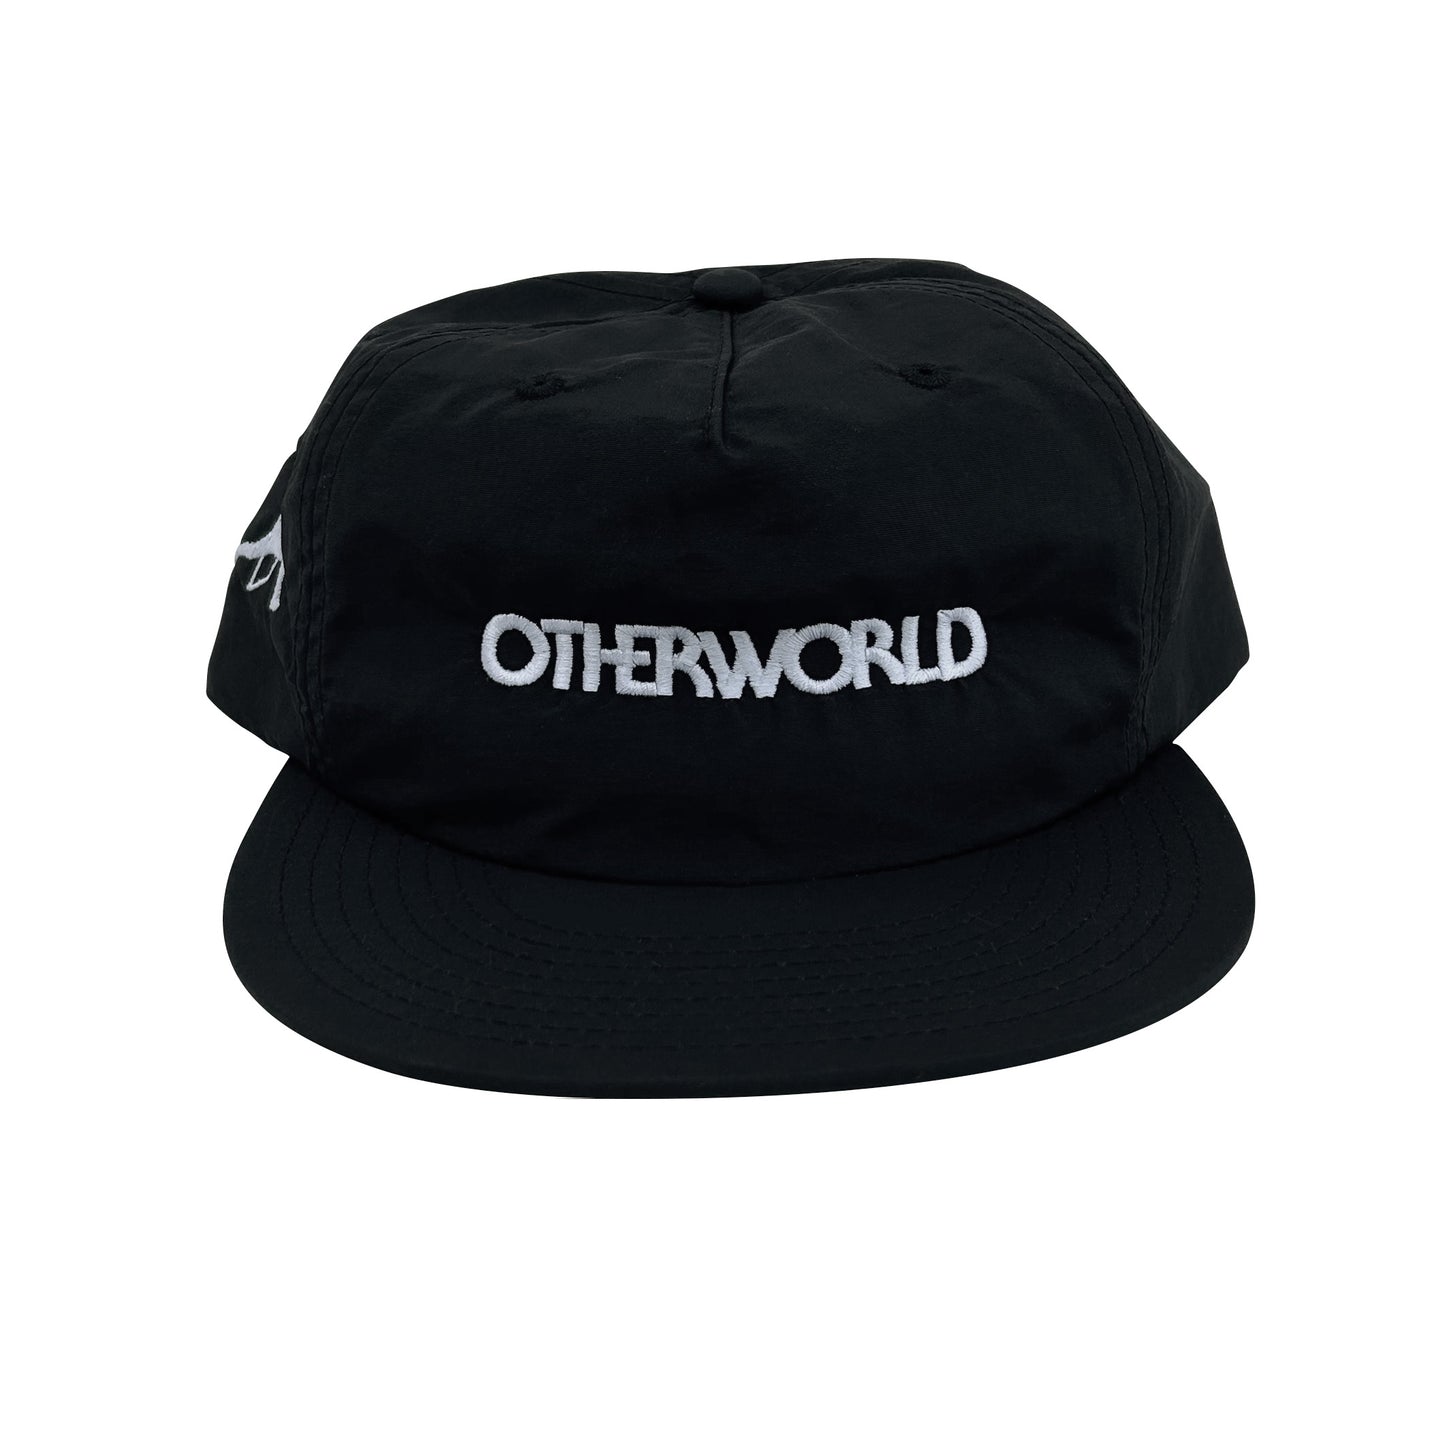 Otherworld Surf Hat